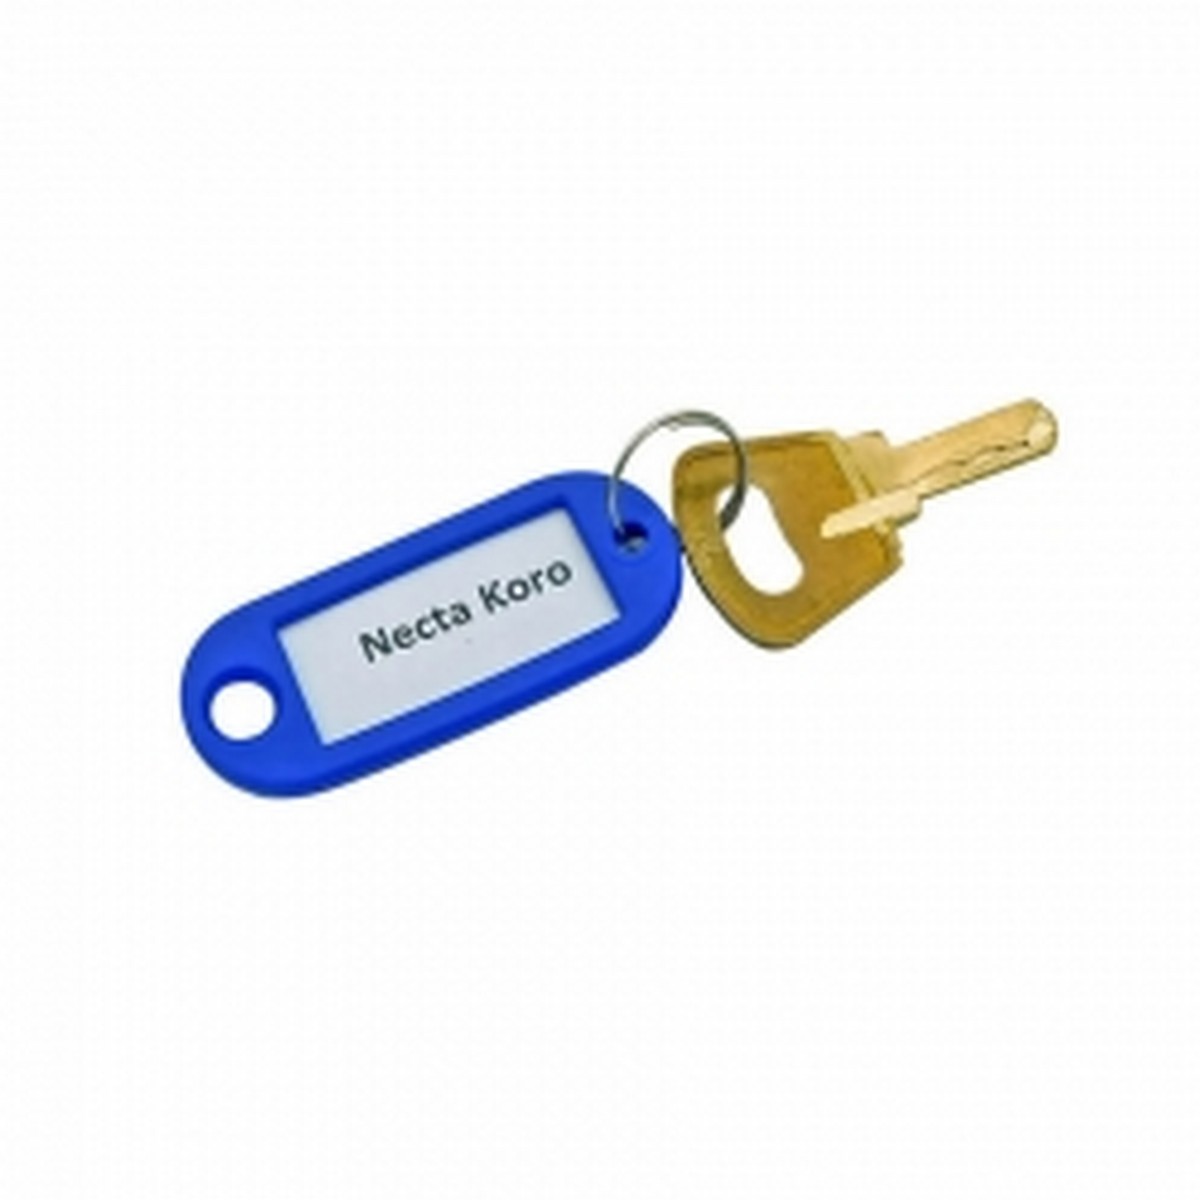 Сервисный ключ для Necta Koro, 911888